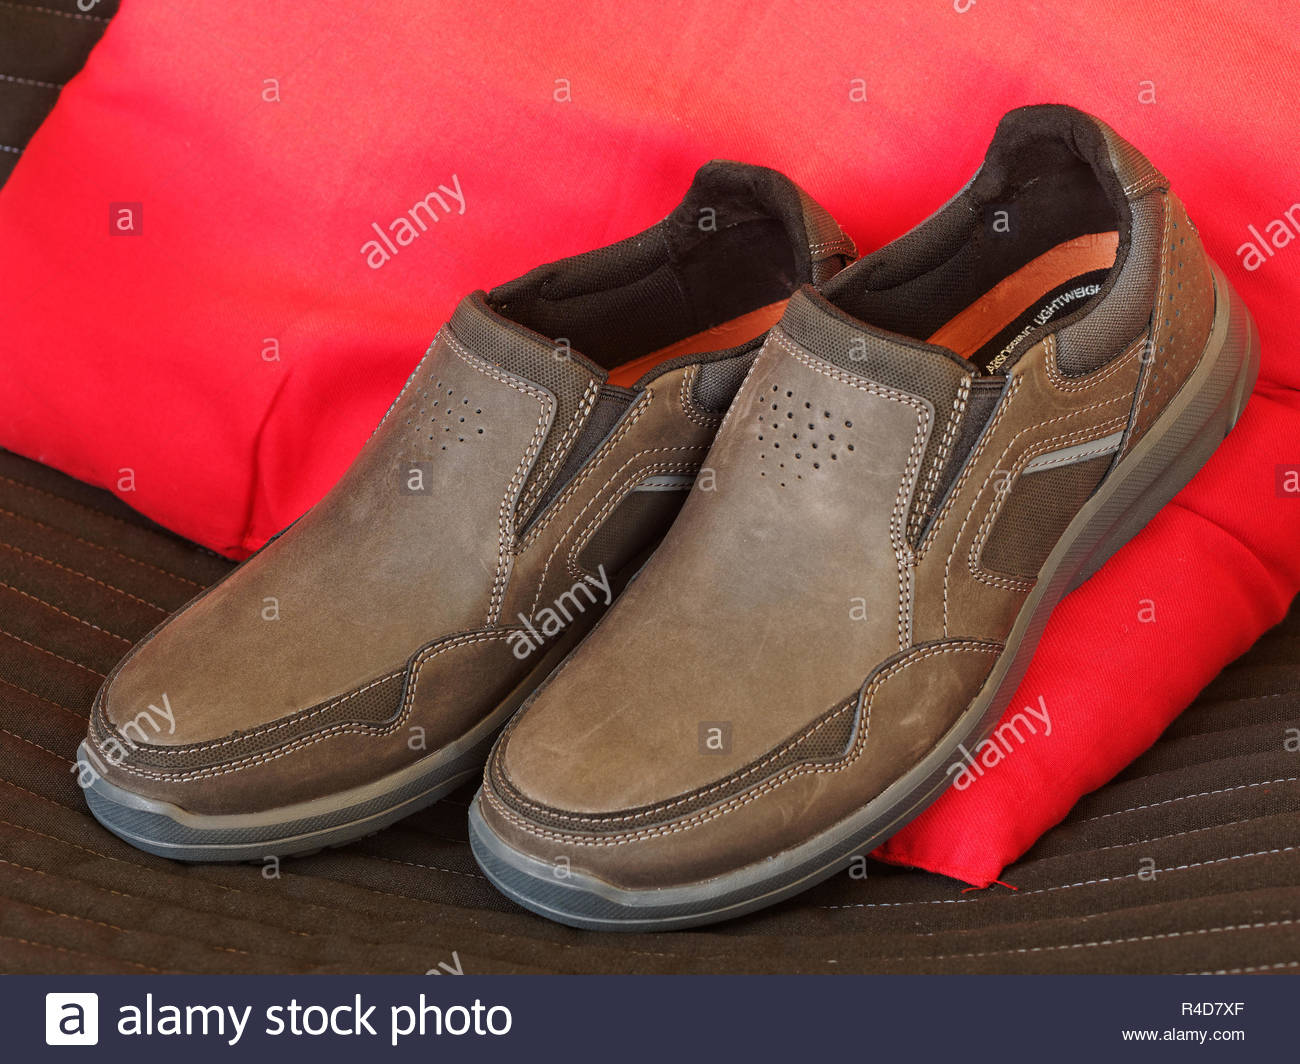 rockport mens slip on shoes